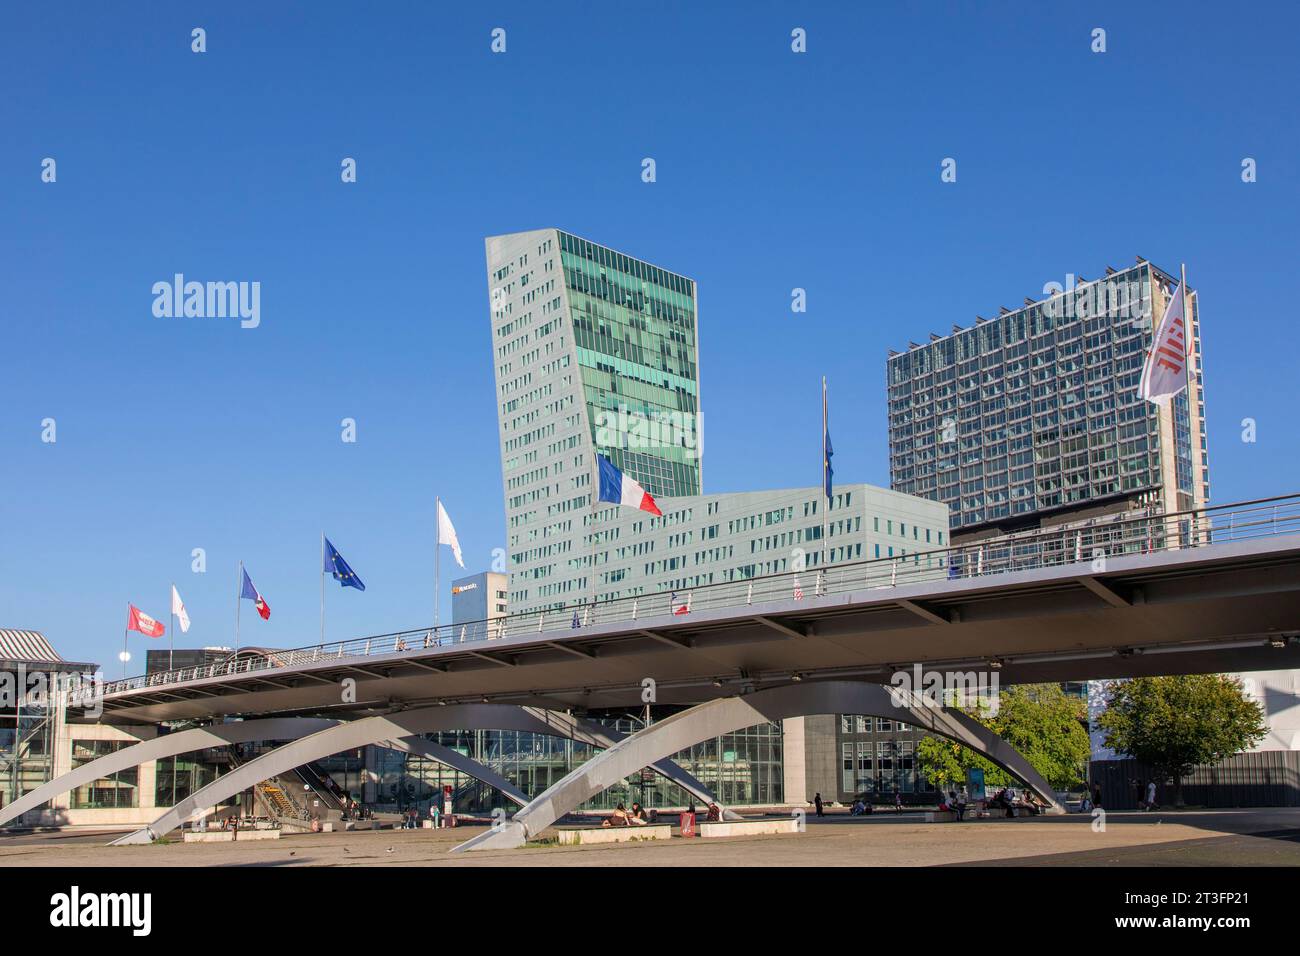 Frankreich, Nord, Lille, Esplanade, François Mitterrand mit dem Geschäftsviertel Euralille, dem Eurostar Bahnhof und dem TGV-Bahnhof Lille Europe Lille, die von der Turm umfasst Stockfoto